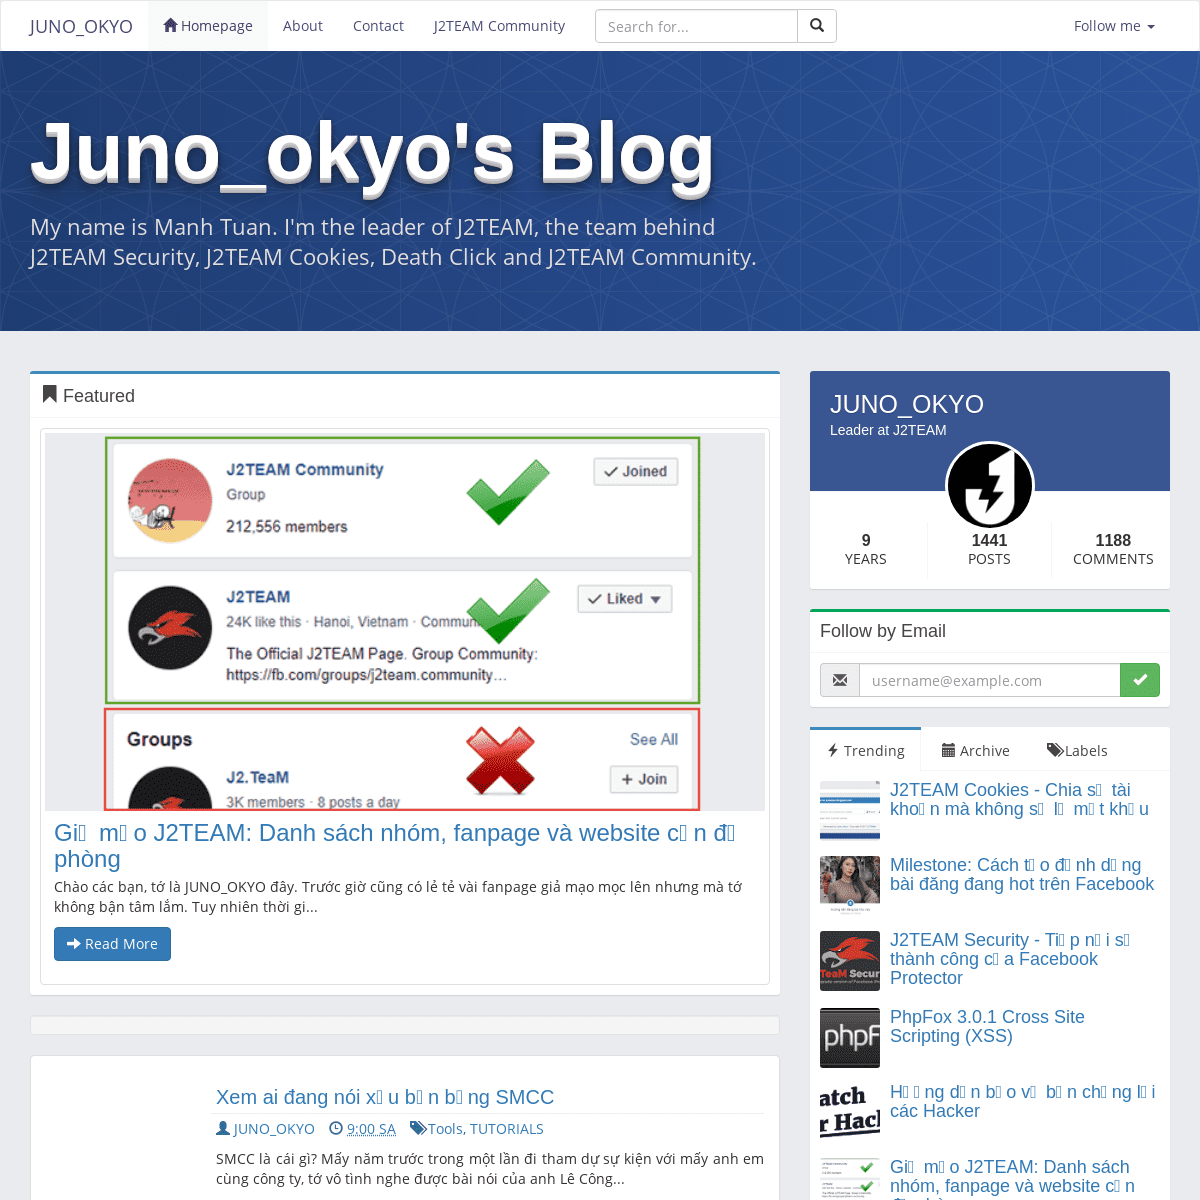 A complete backup of junookyo.blogspot.com